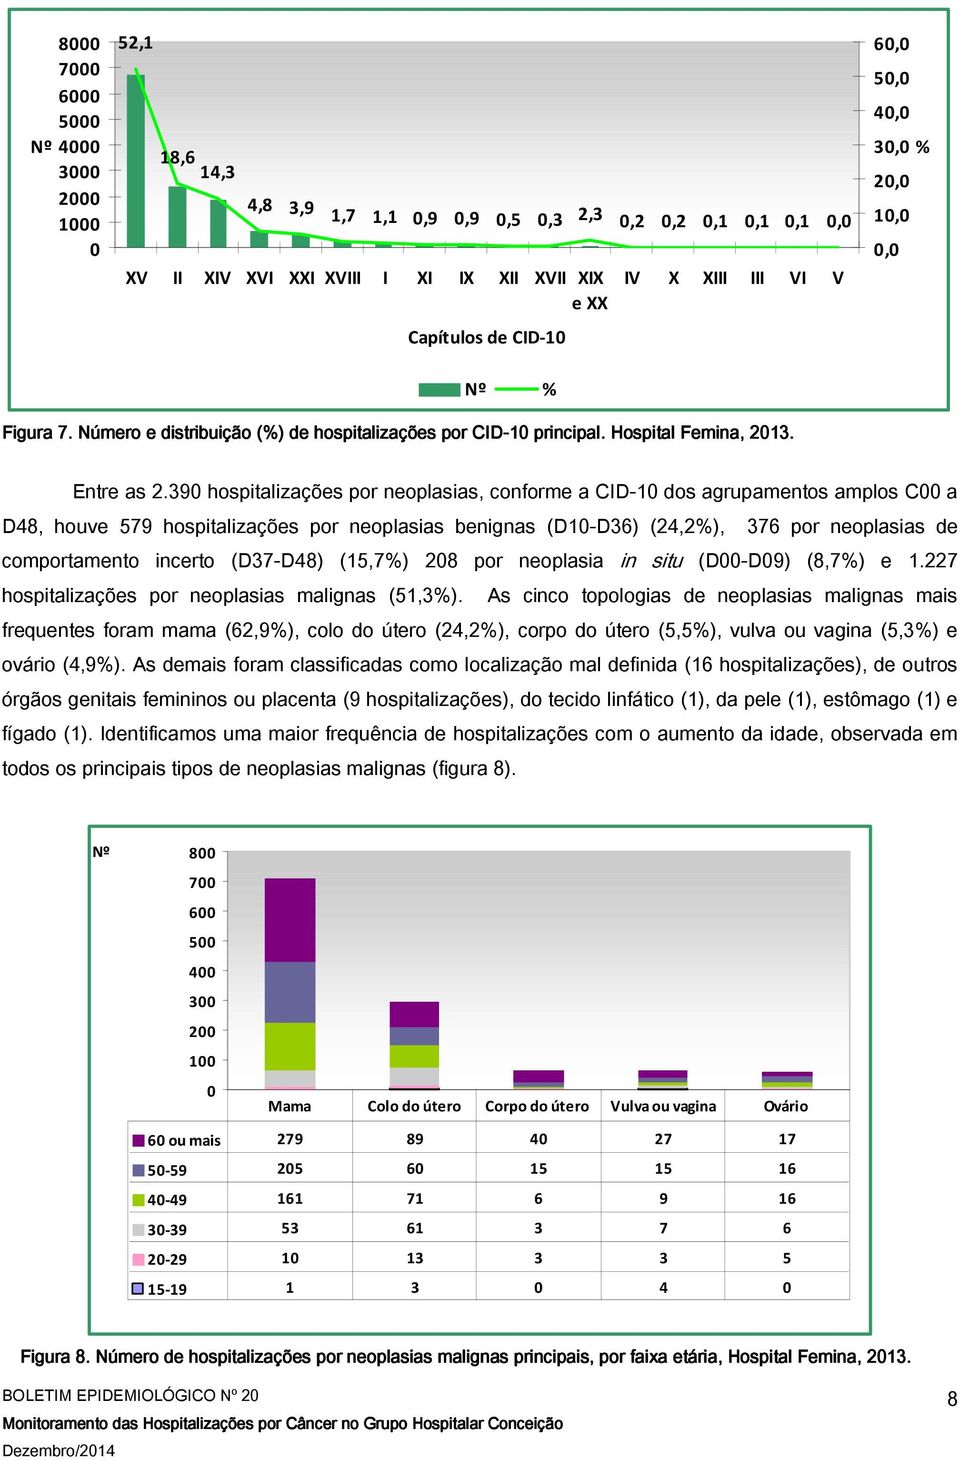 39 hospitalizações por neoplasias, conforme a CID-1 dos agrupamentos amplos C a D48, houve 579 hospitalizações por neoplasias benignas (D1-D36) (24,2%), 376 por neoplasias de comportamento incerto